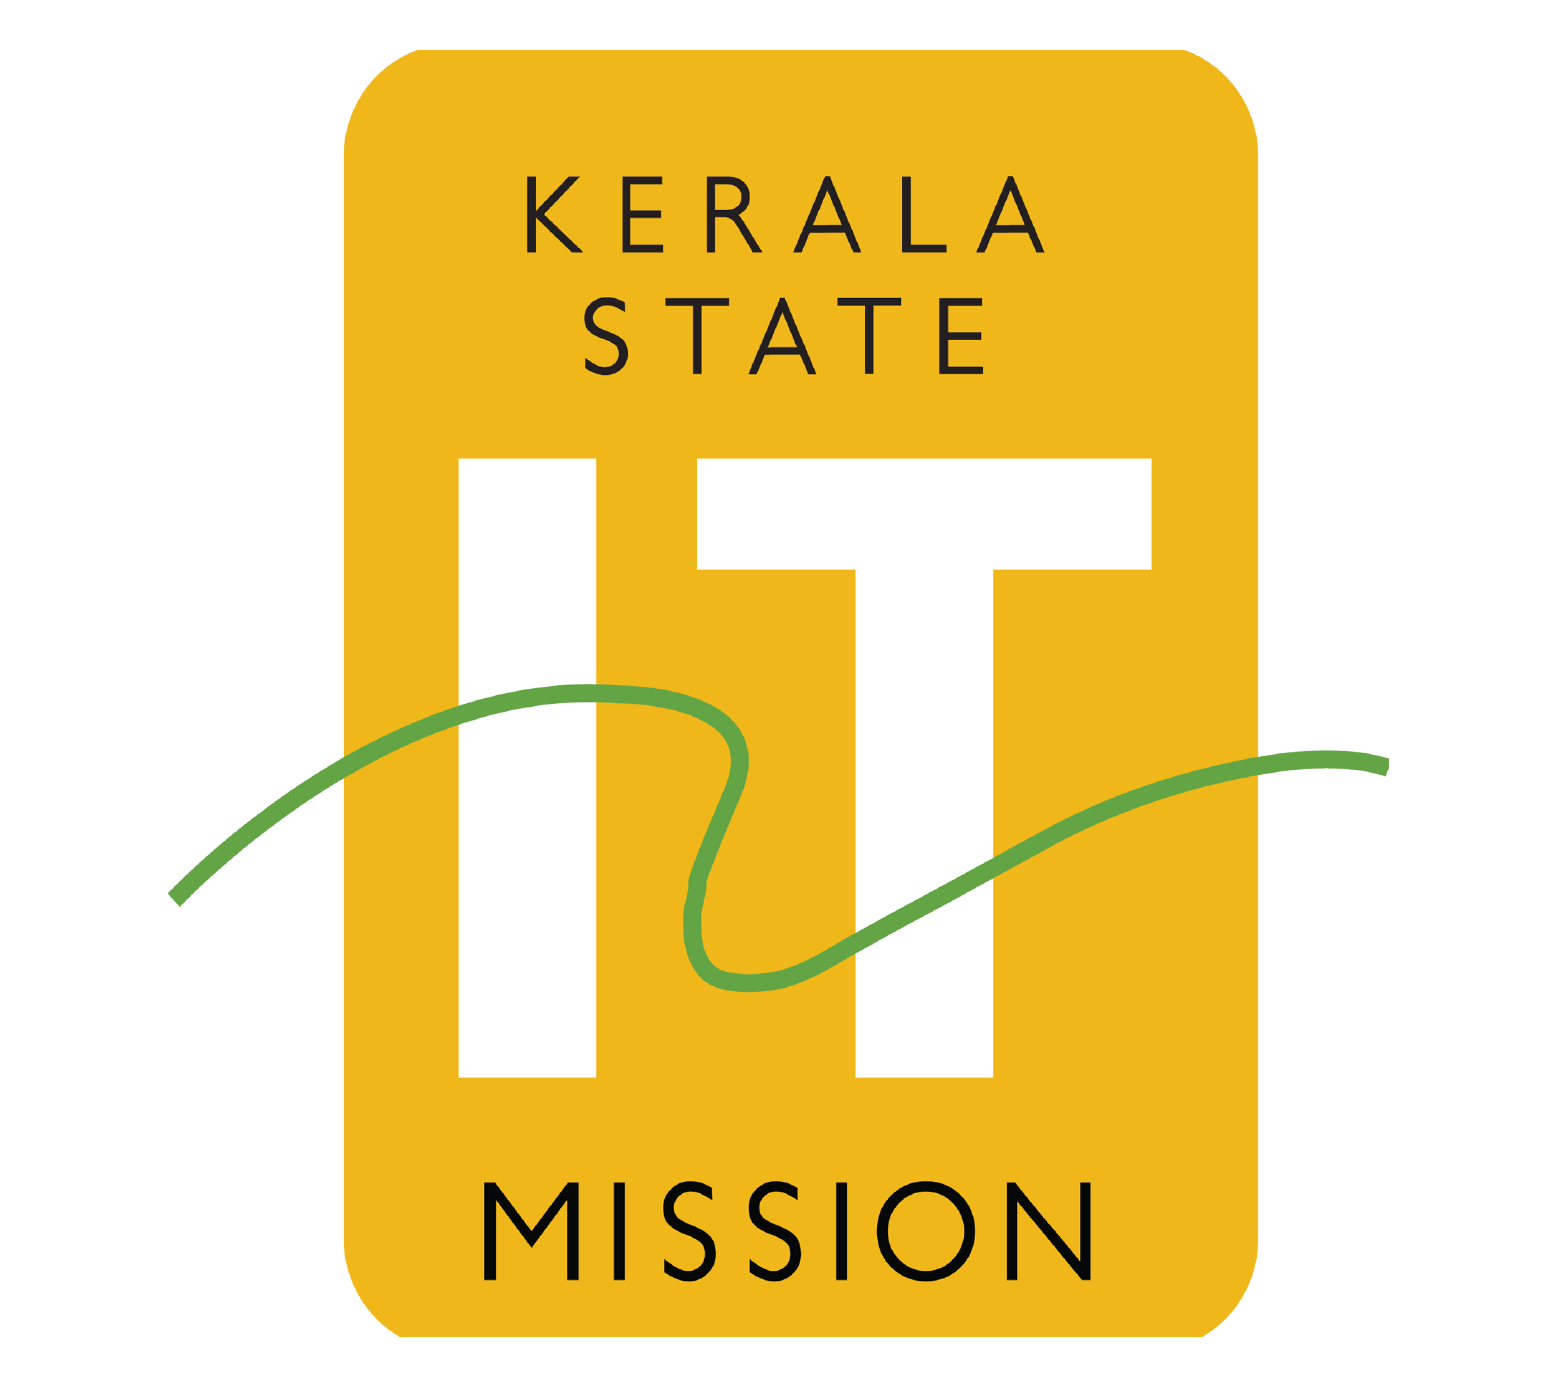 Kerala IT Mission